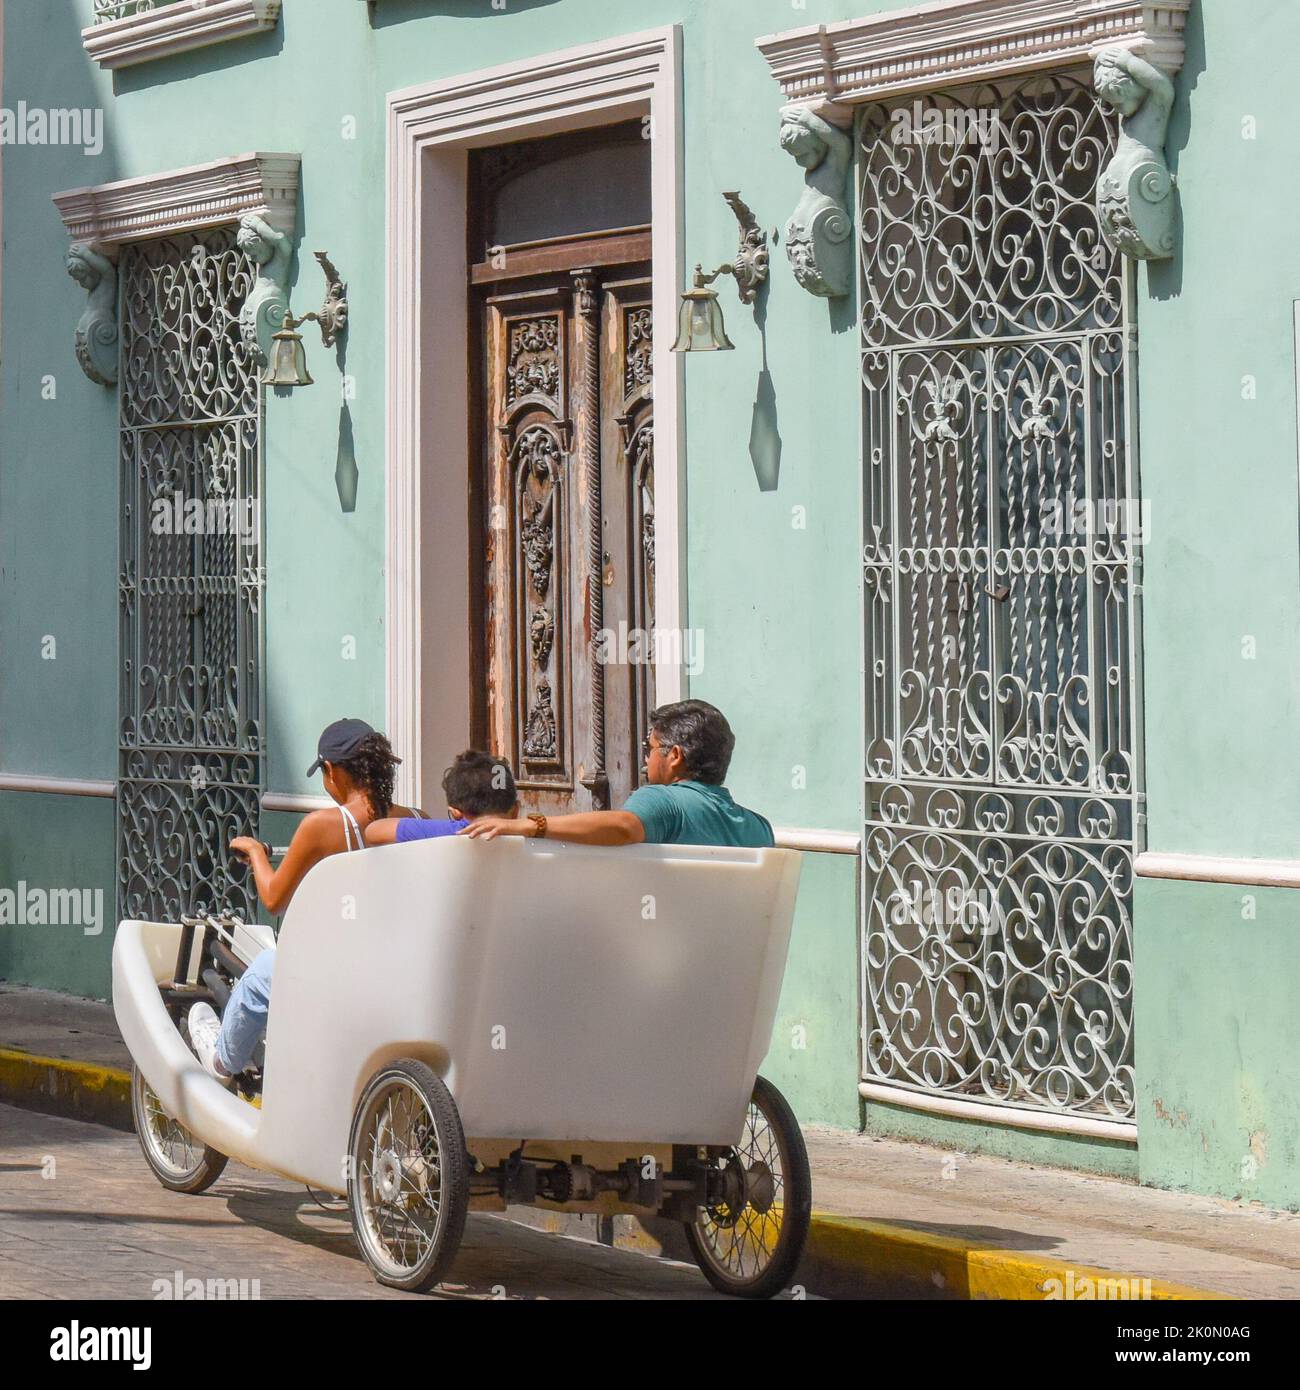 Actividades al aire libre en el centro histórico de Mérida, Yucatán, México Foto de stock